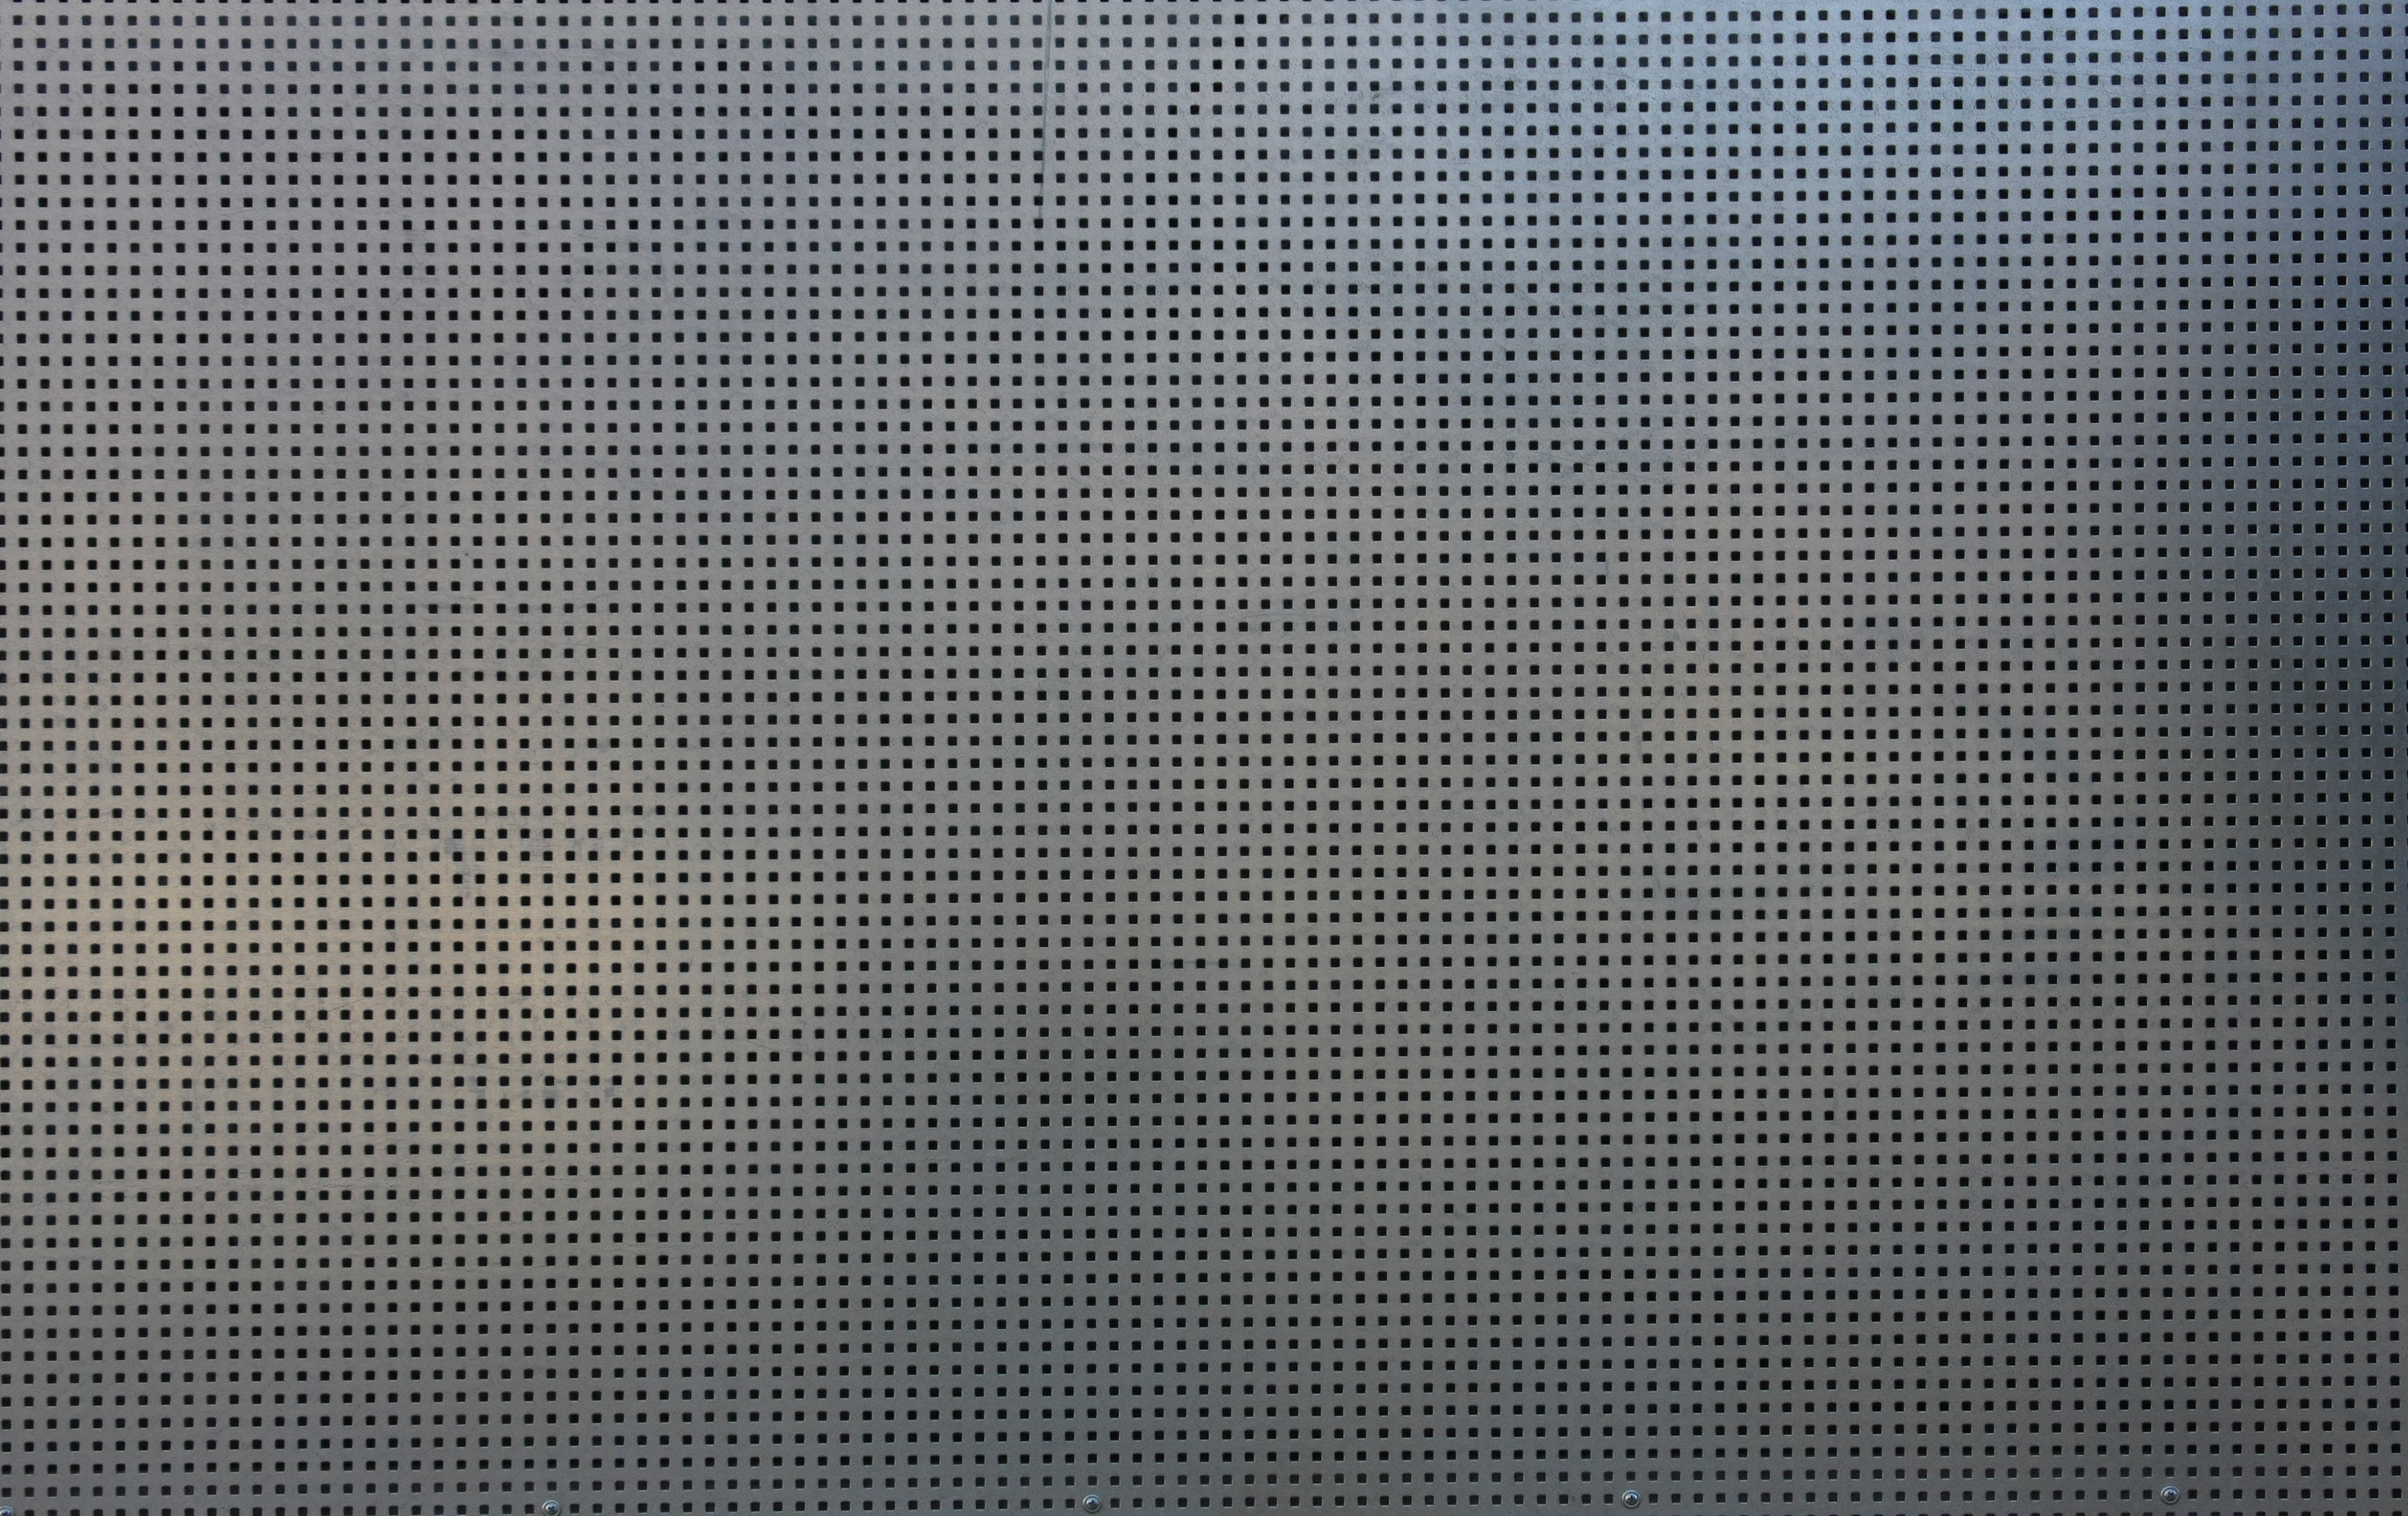 металл, текстура, металлическая решетка, скачать фото, фон, metal grid texture background